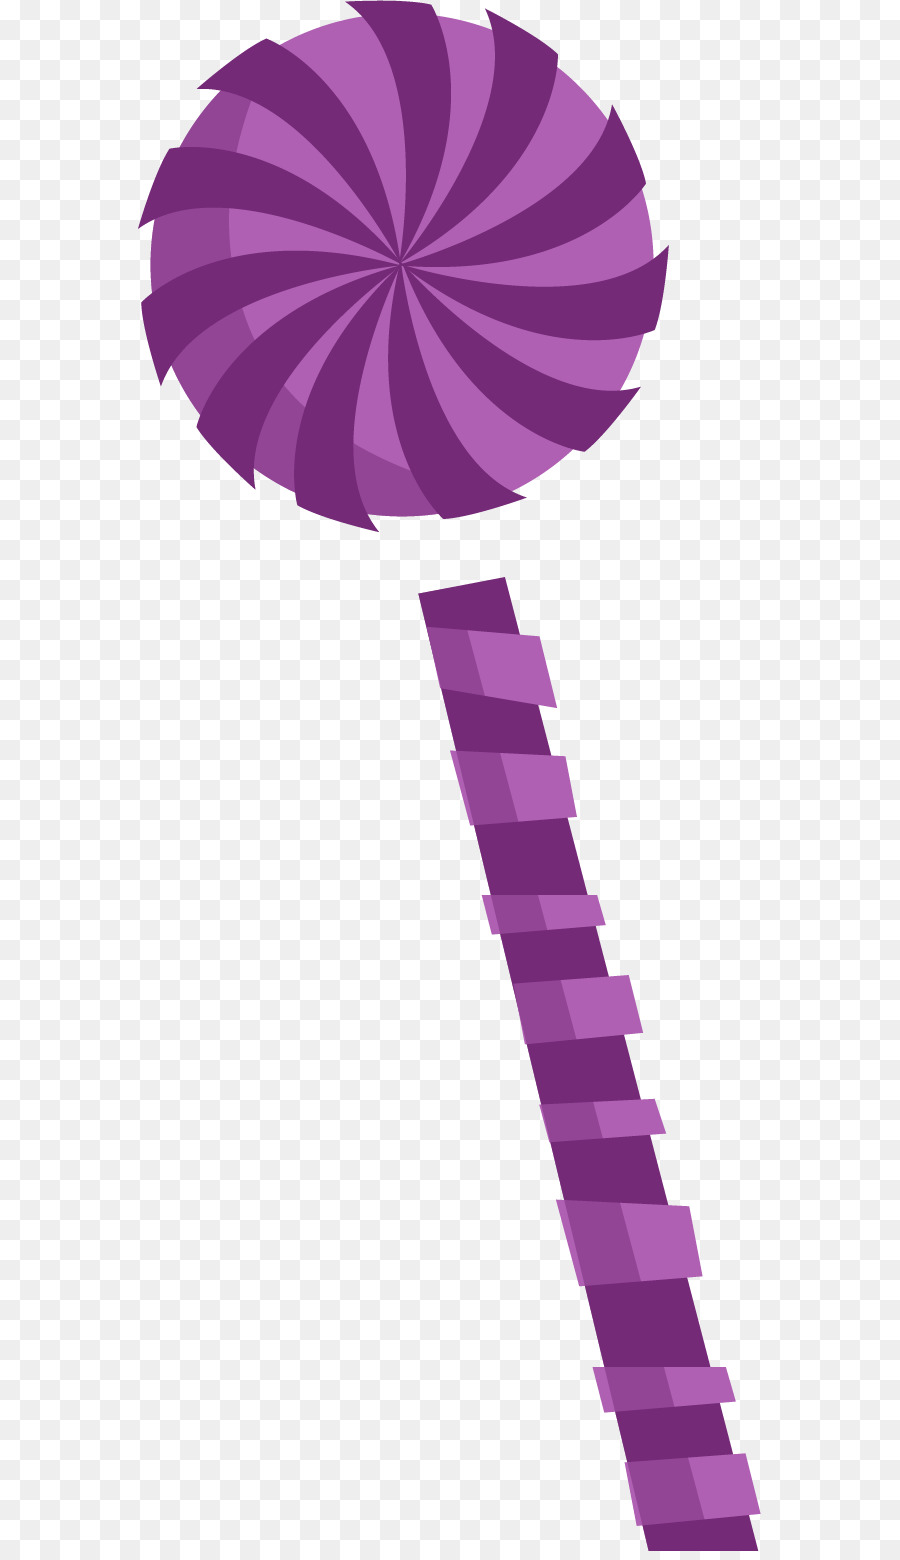 Lollipop-Purple - Vektor von Hand bemalt lollipop